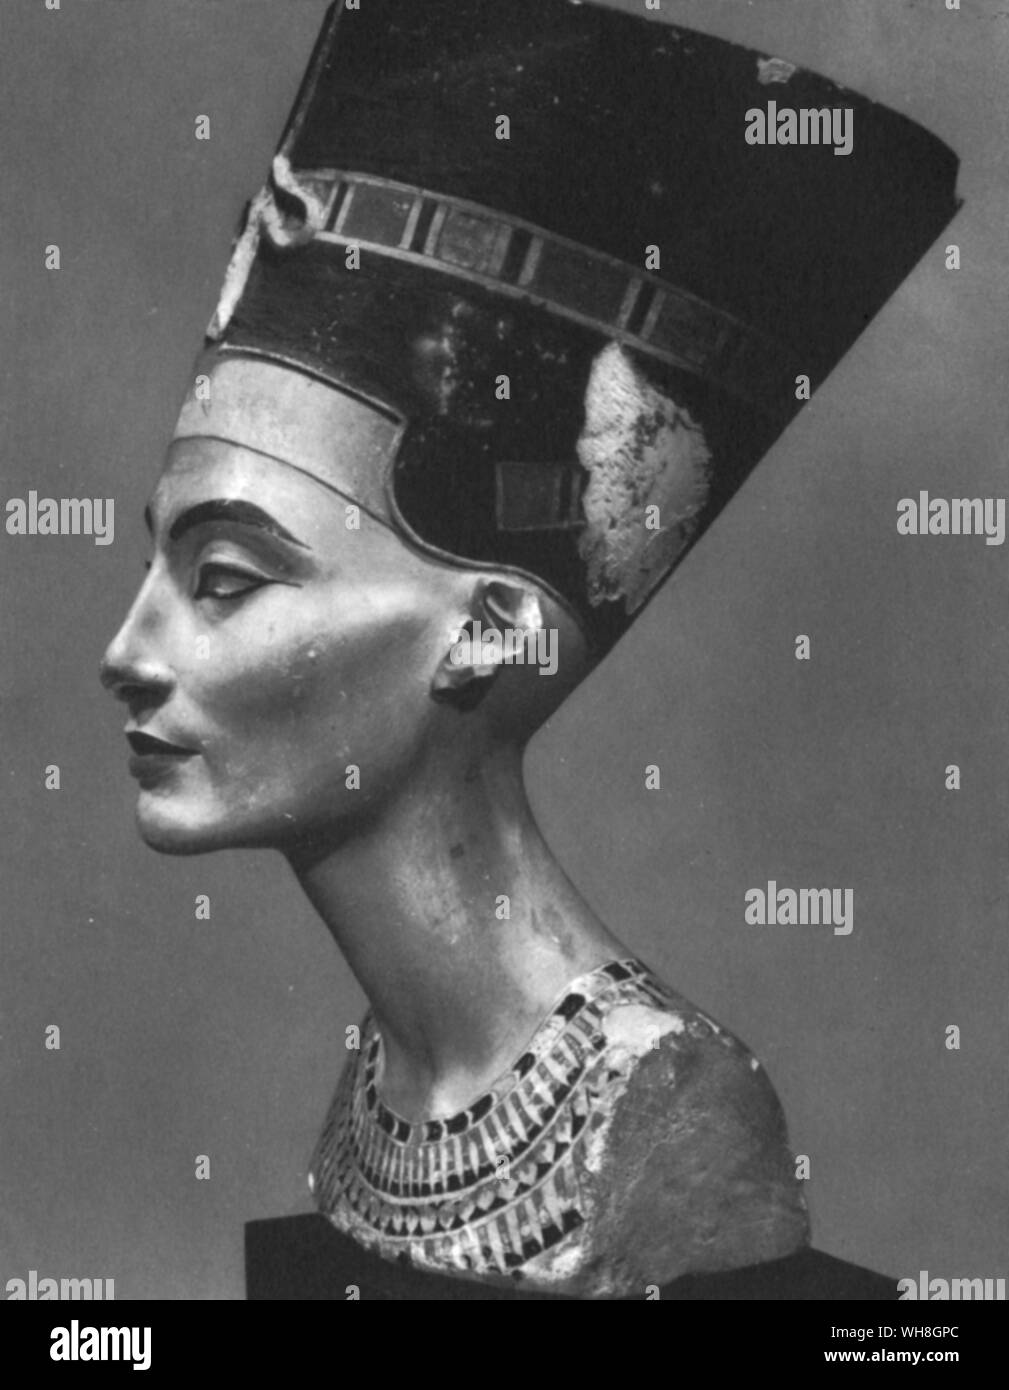 Buste de la reine Néfertiti. Néfertiti est l'épouse du pharaon égyptien Amenhotep IV (Akhénaton) plus tard, et belle-mère du pharaon Toutankhamon. Son nom signifie à peu près la belle l'un est venu. Le buste est l'un des plus copiés fonctionne de l'Egypte ancienne. Il a été attribué au sculpteur Djhutmose, et a été retrouvé dans son atelier. Les trésors de Toutankhamon. Par Christiane Desroches Noblecourt Toutankhamon, page 105.. Banque D'Images